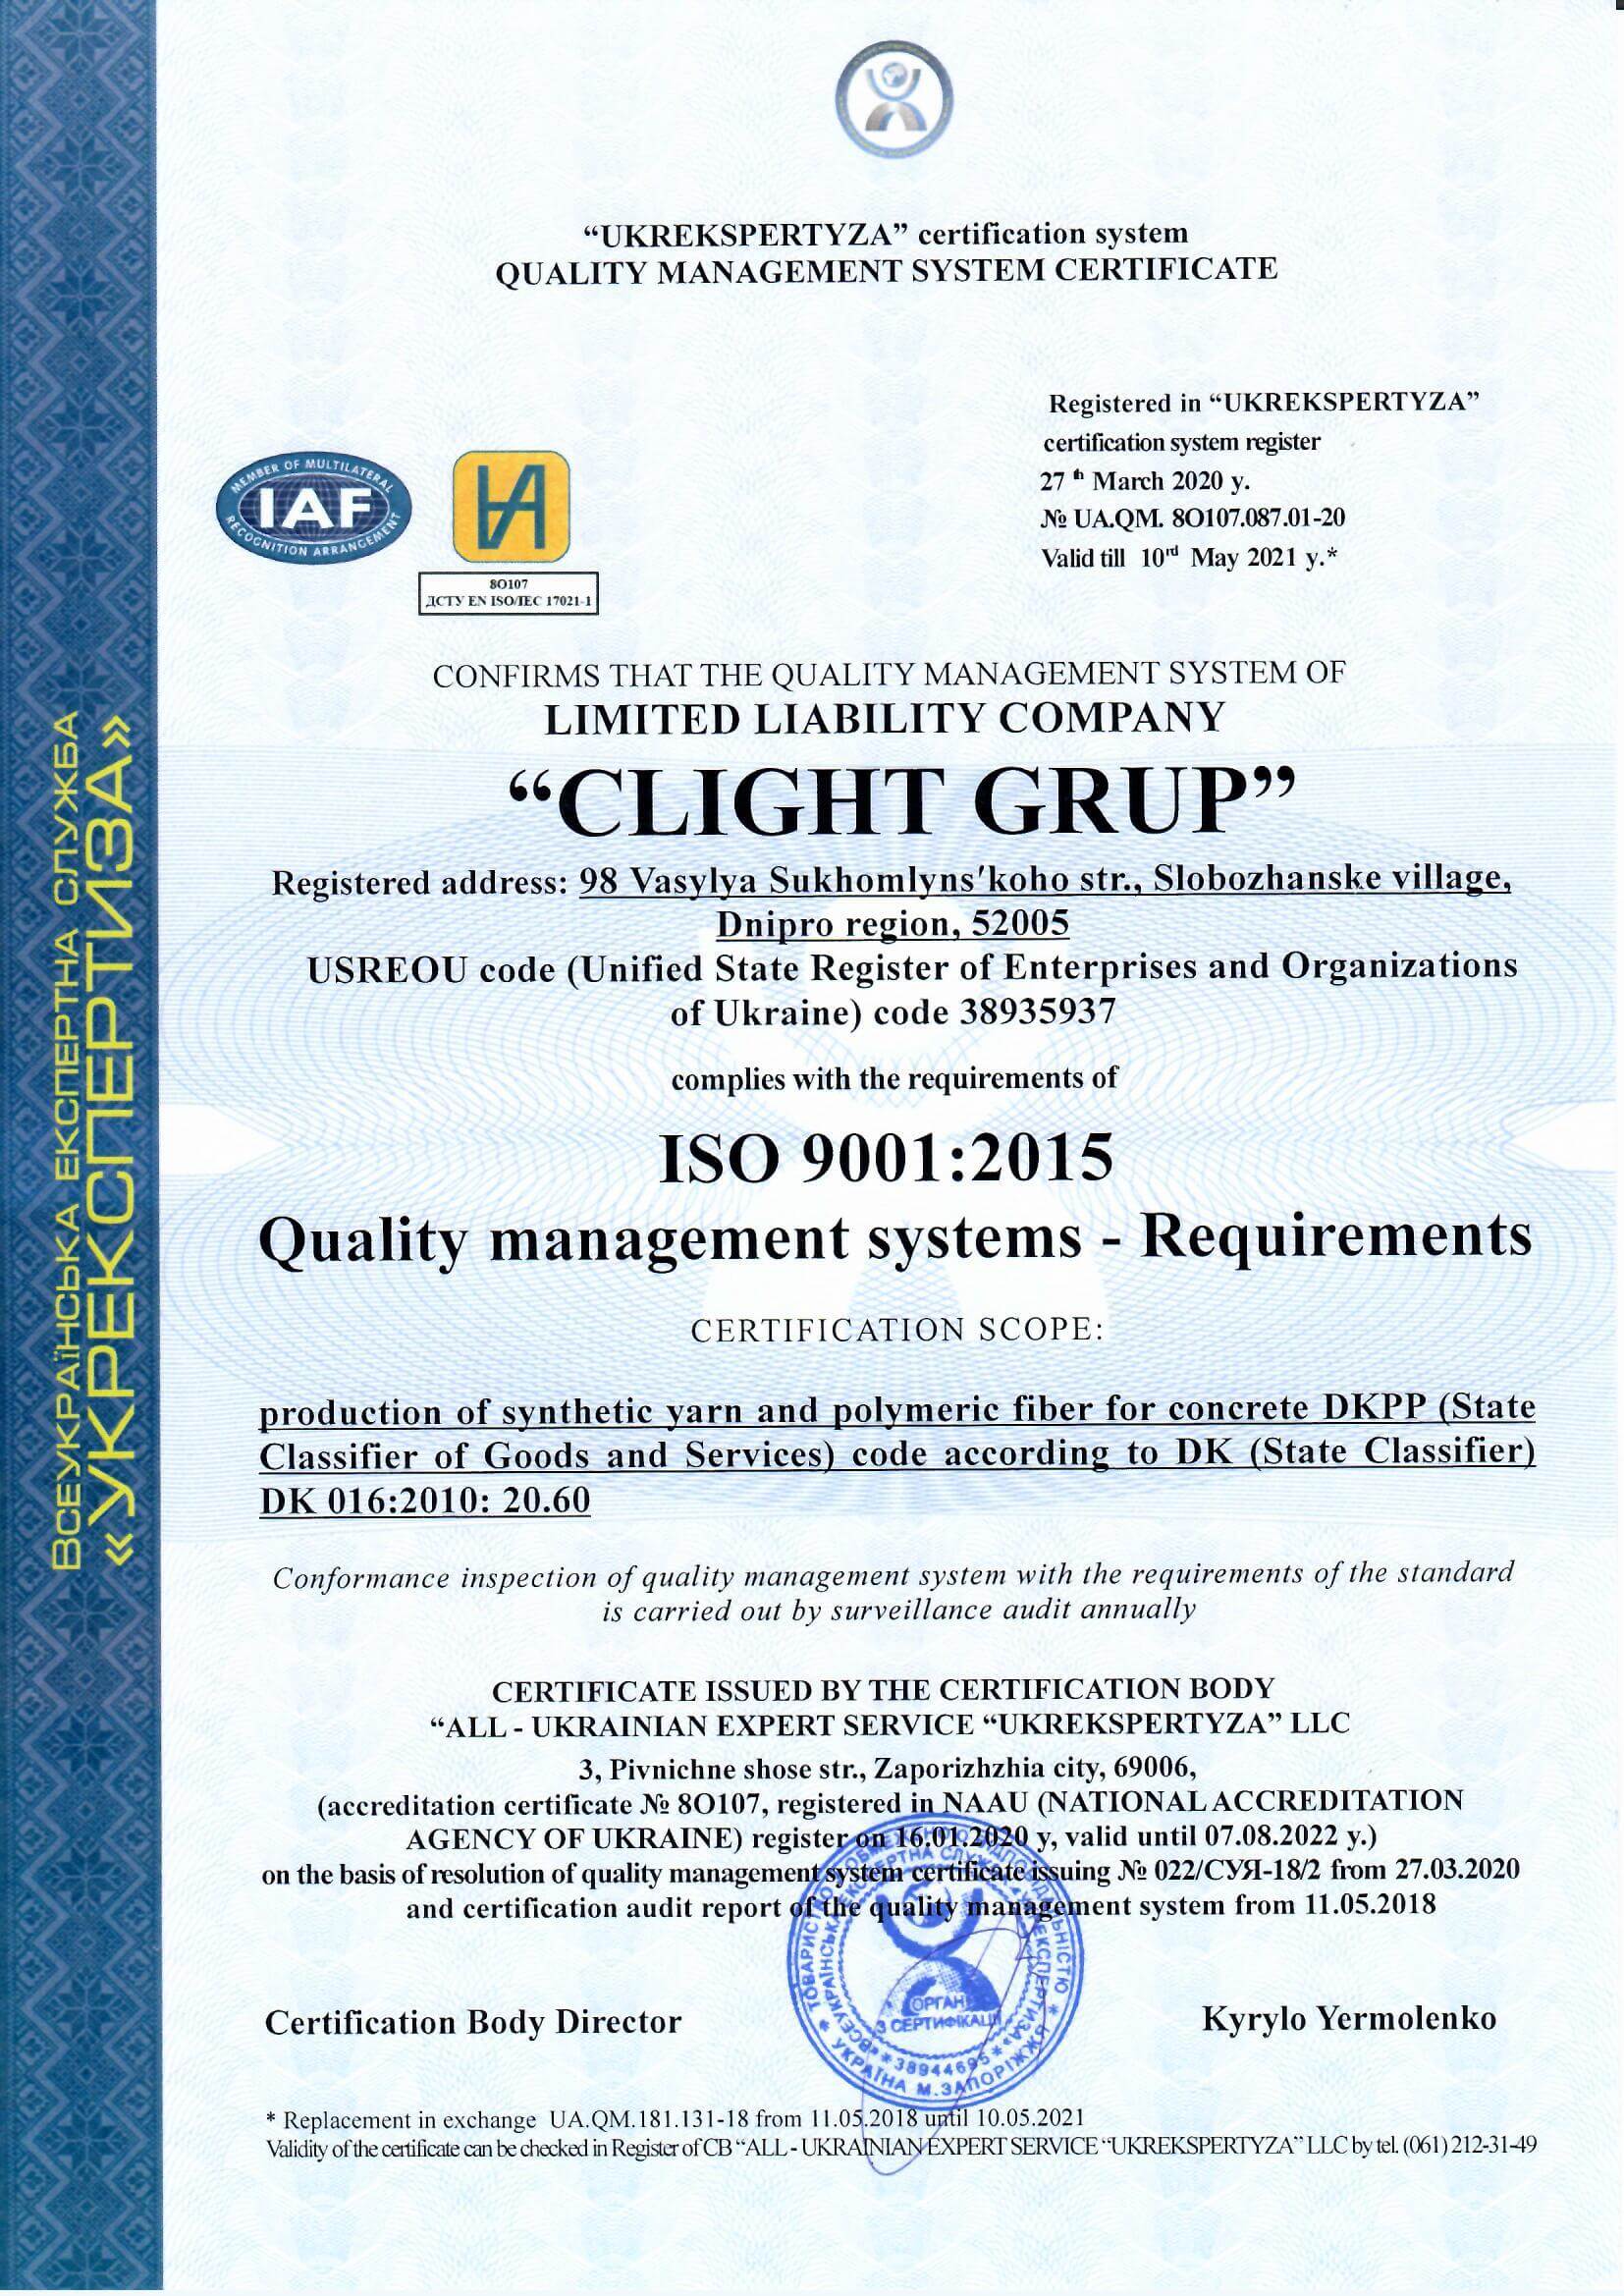 Mikrofibra do betonu FiberMix® System kontroli jakości firmy FIBERMIX jest certyfikowany zgodnie z normą ISO 9001:2015